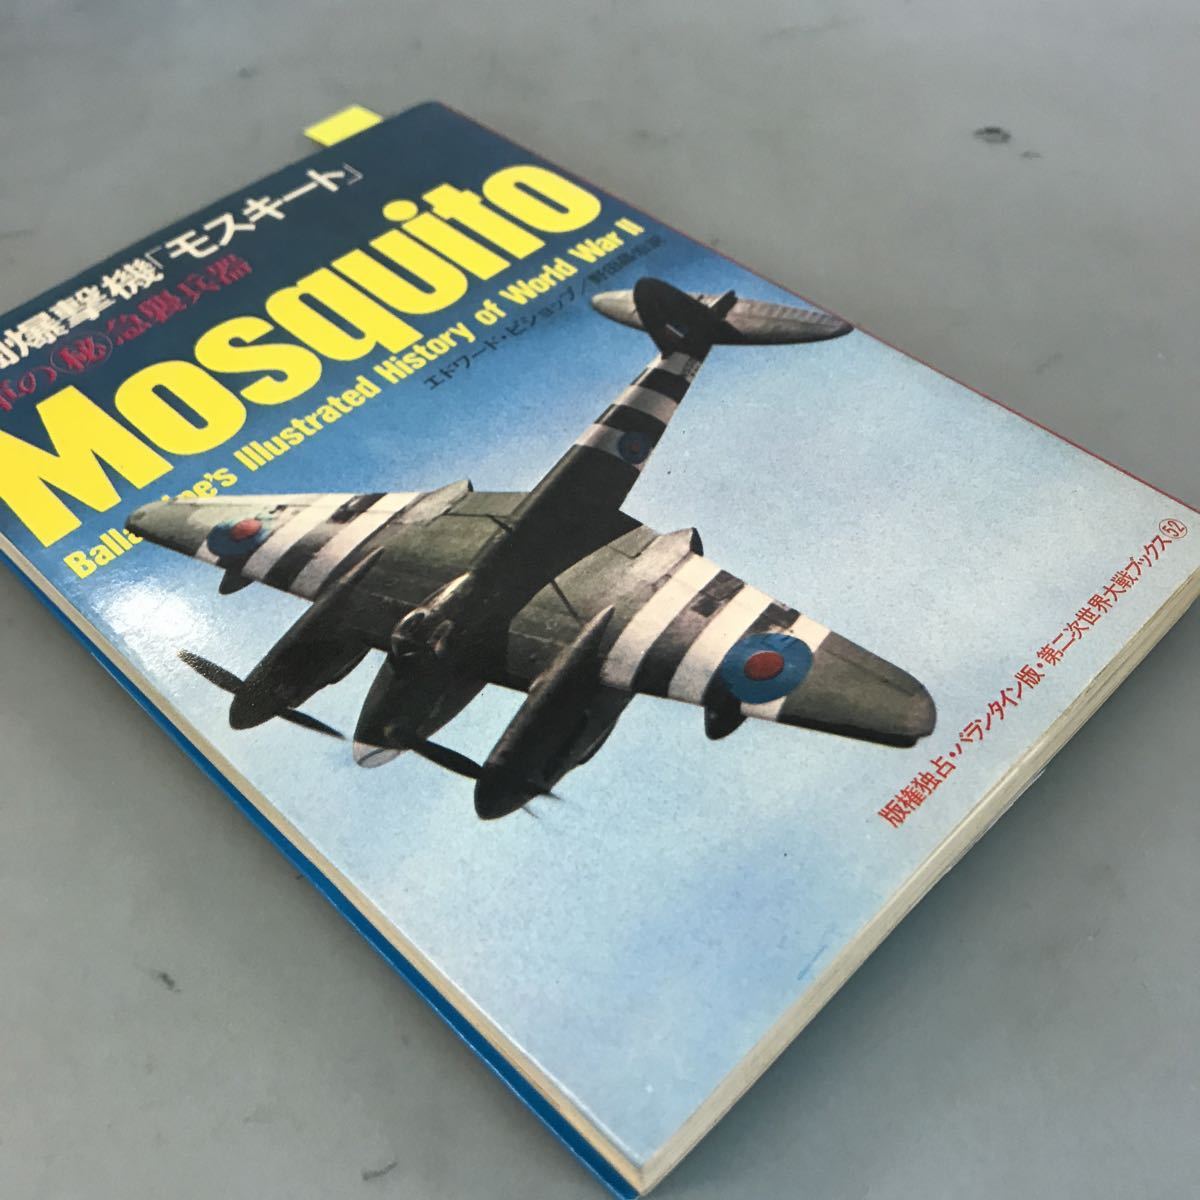 B65-082 Mosquito 戦略爆撃機モスキート 英国の急襲兵器 第二次世界大戦ブックス 52 サンケイ新聞社出版局 ページ割れ有り_画像2